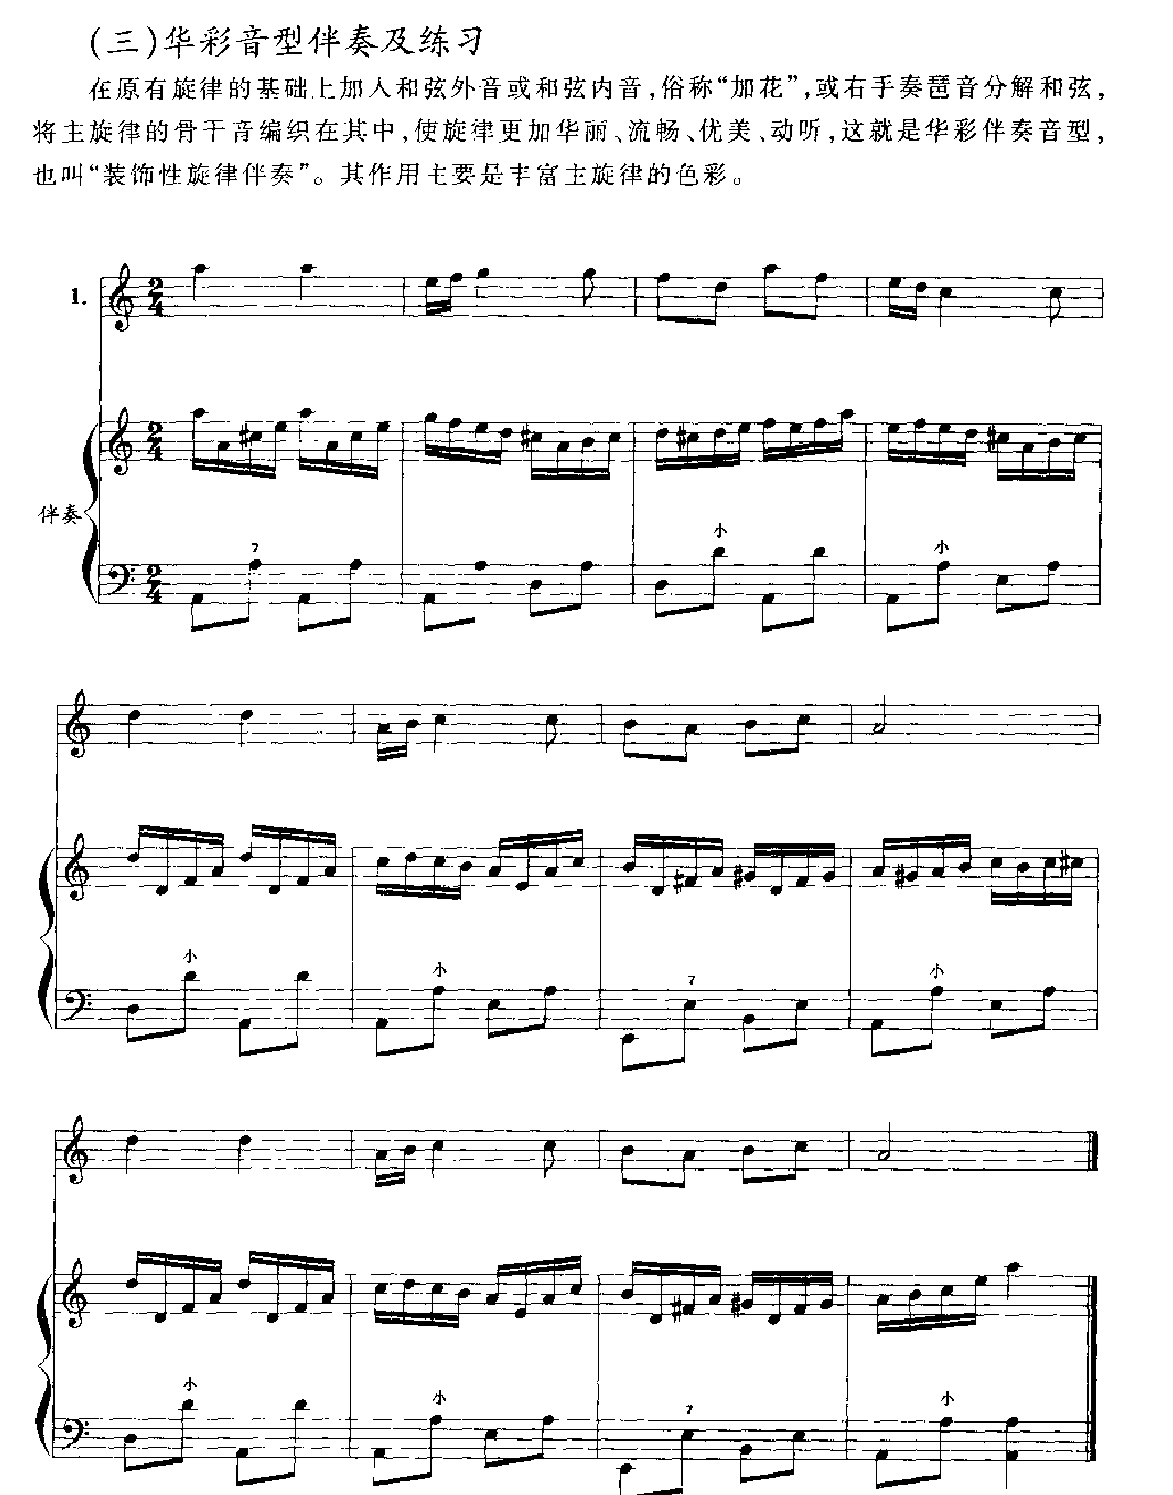 应掌握的几种手风琴伴奏类型7